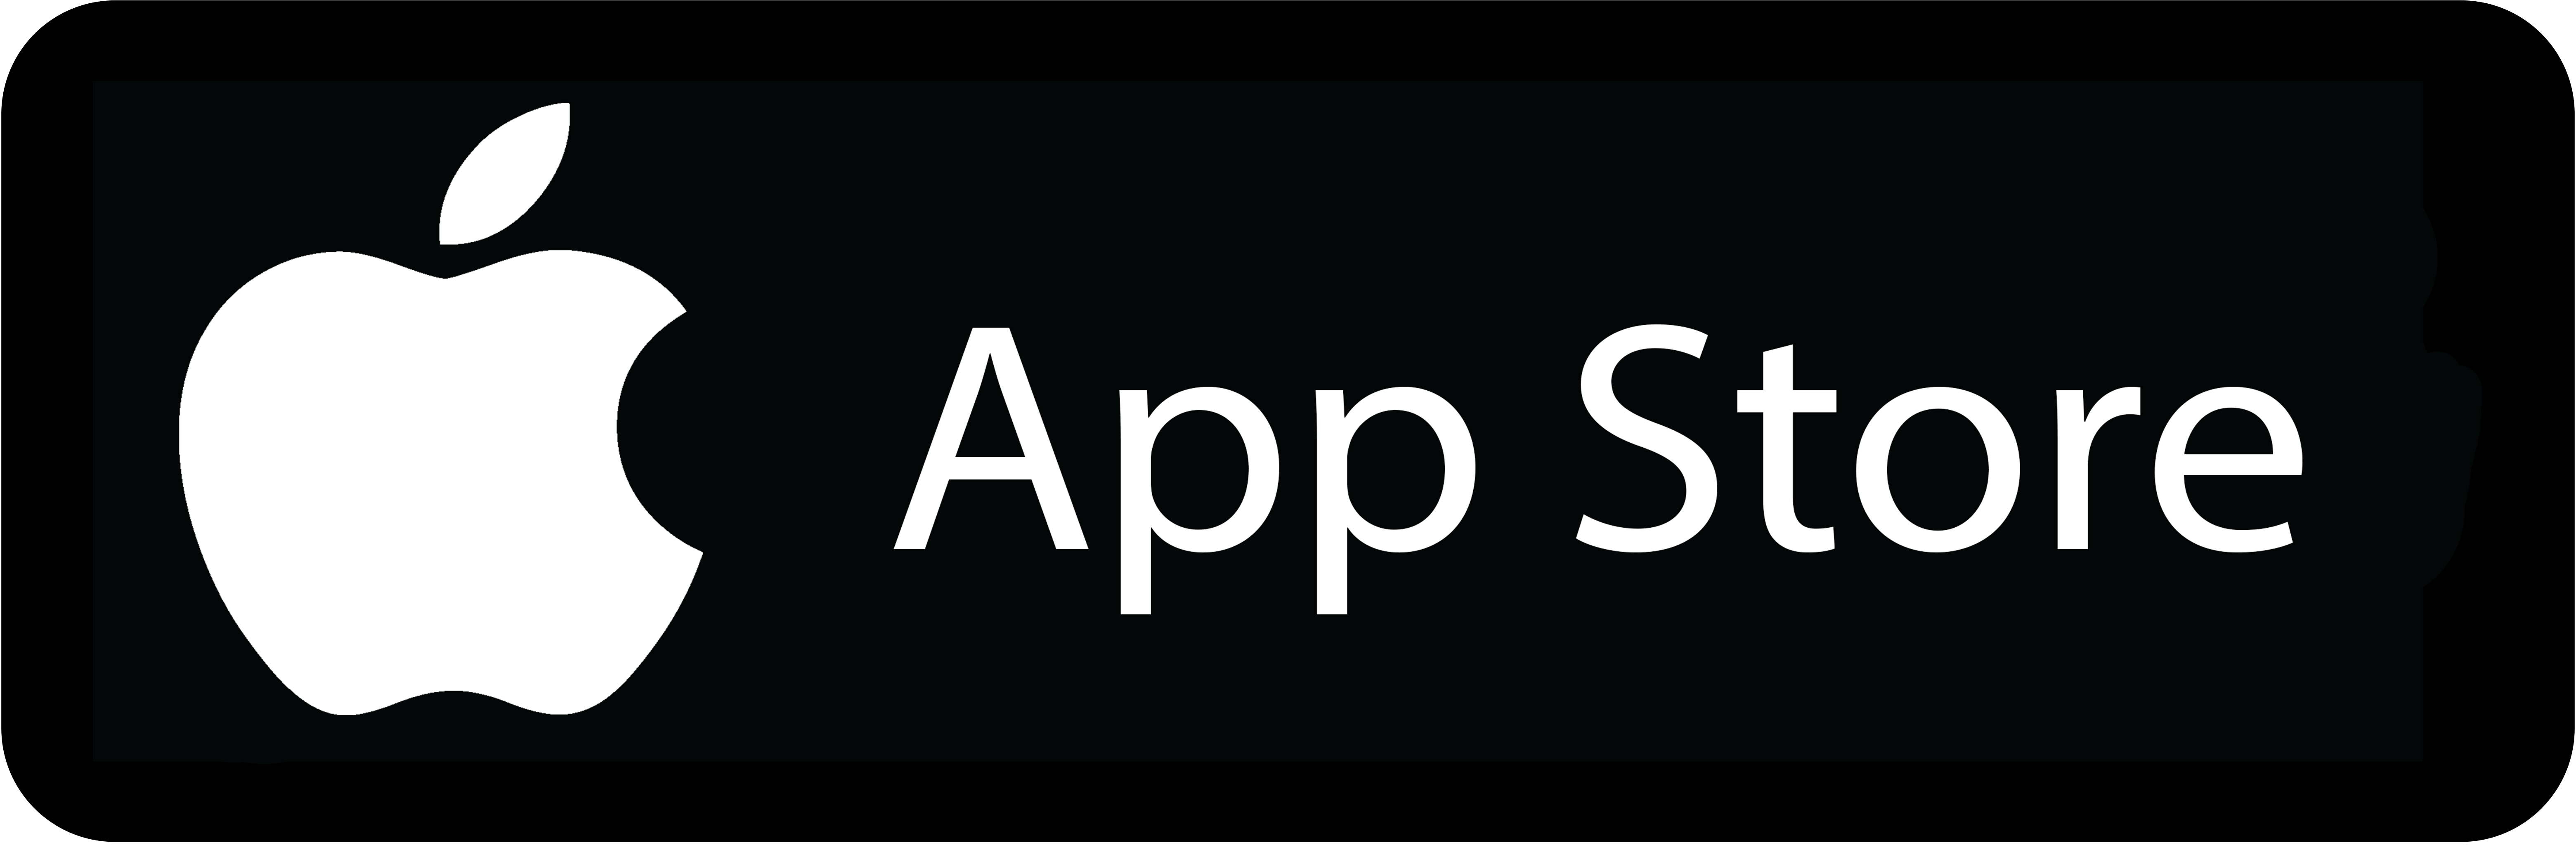 Apple applications. Apple Store лого. Apple Store приложение. Иконка аппсторе. Значок доступно в app Store.